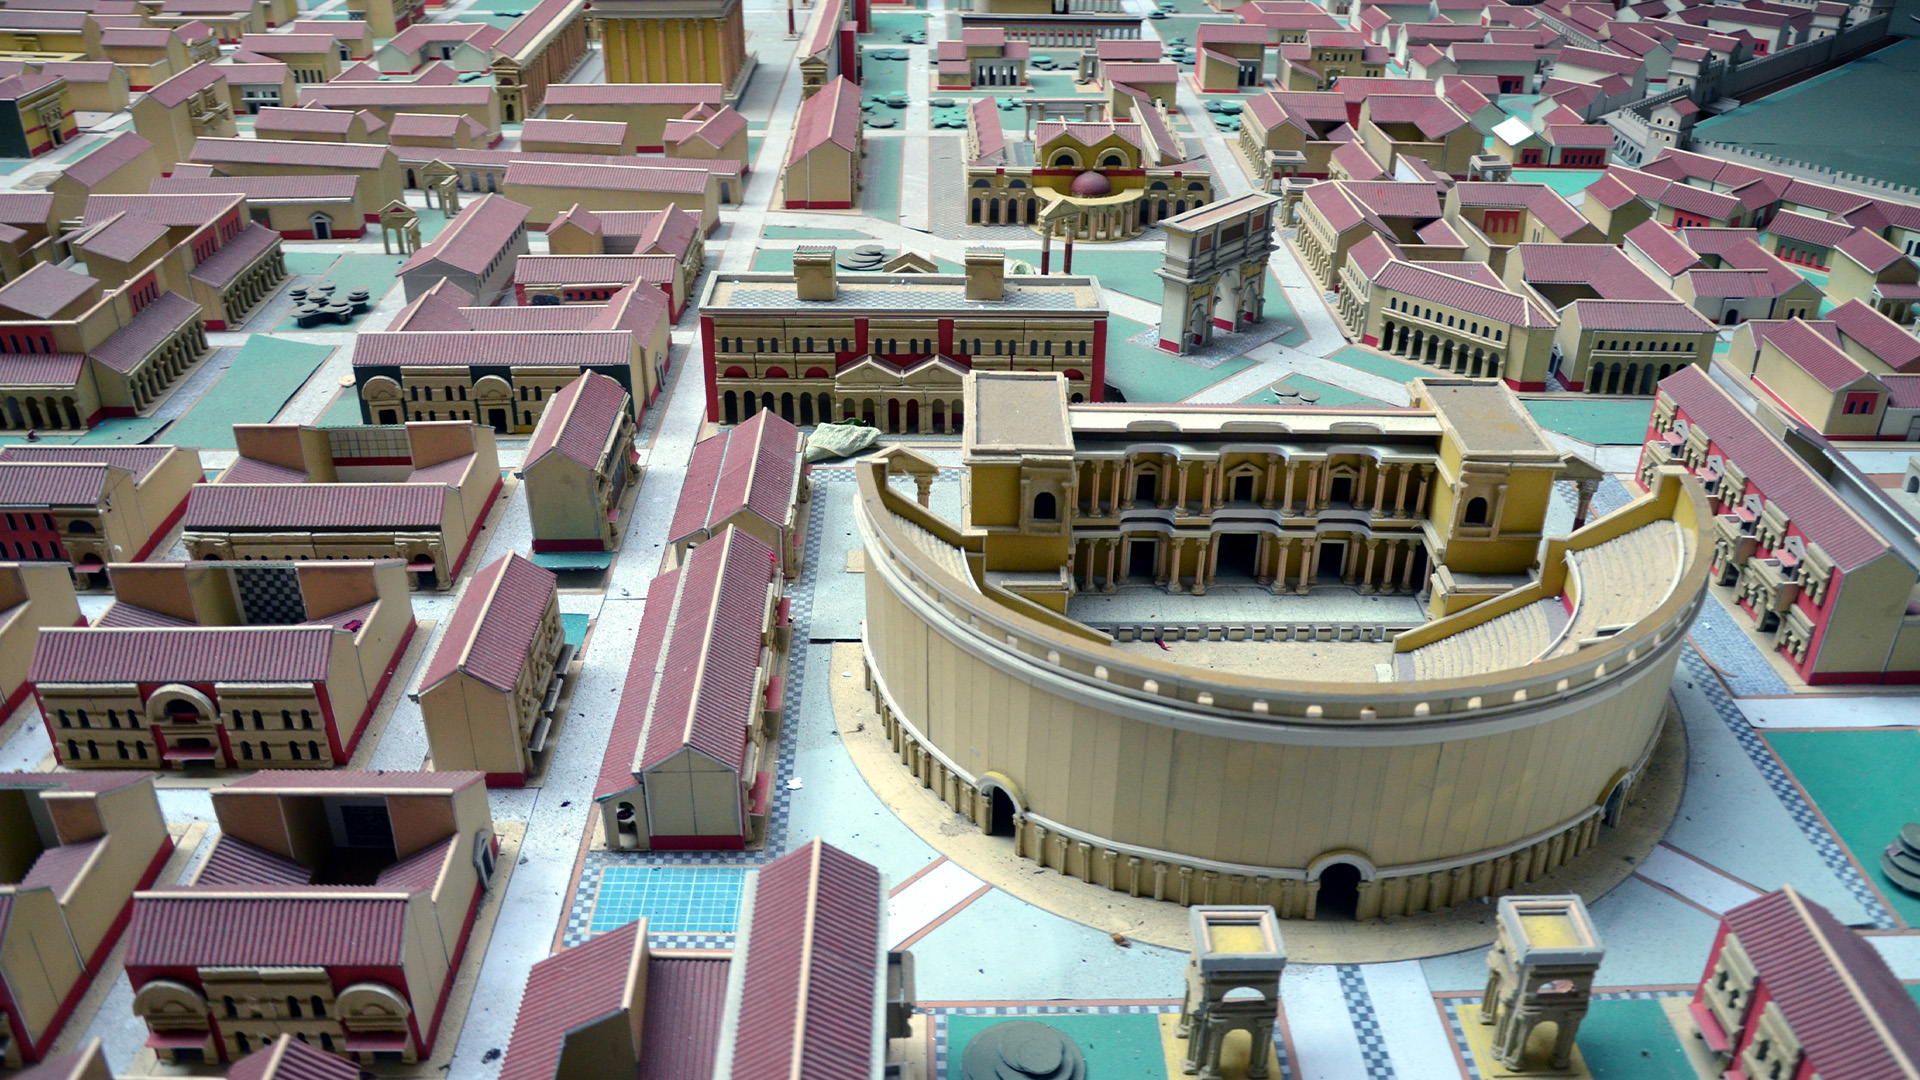 Виждаме виртуален модел на римски град със сгради с червени покриви и амфитеатър.